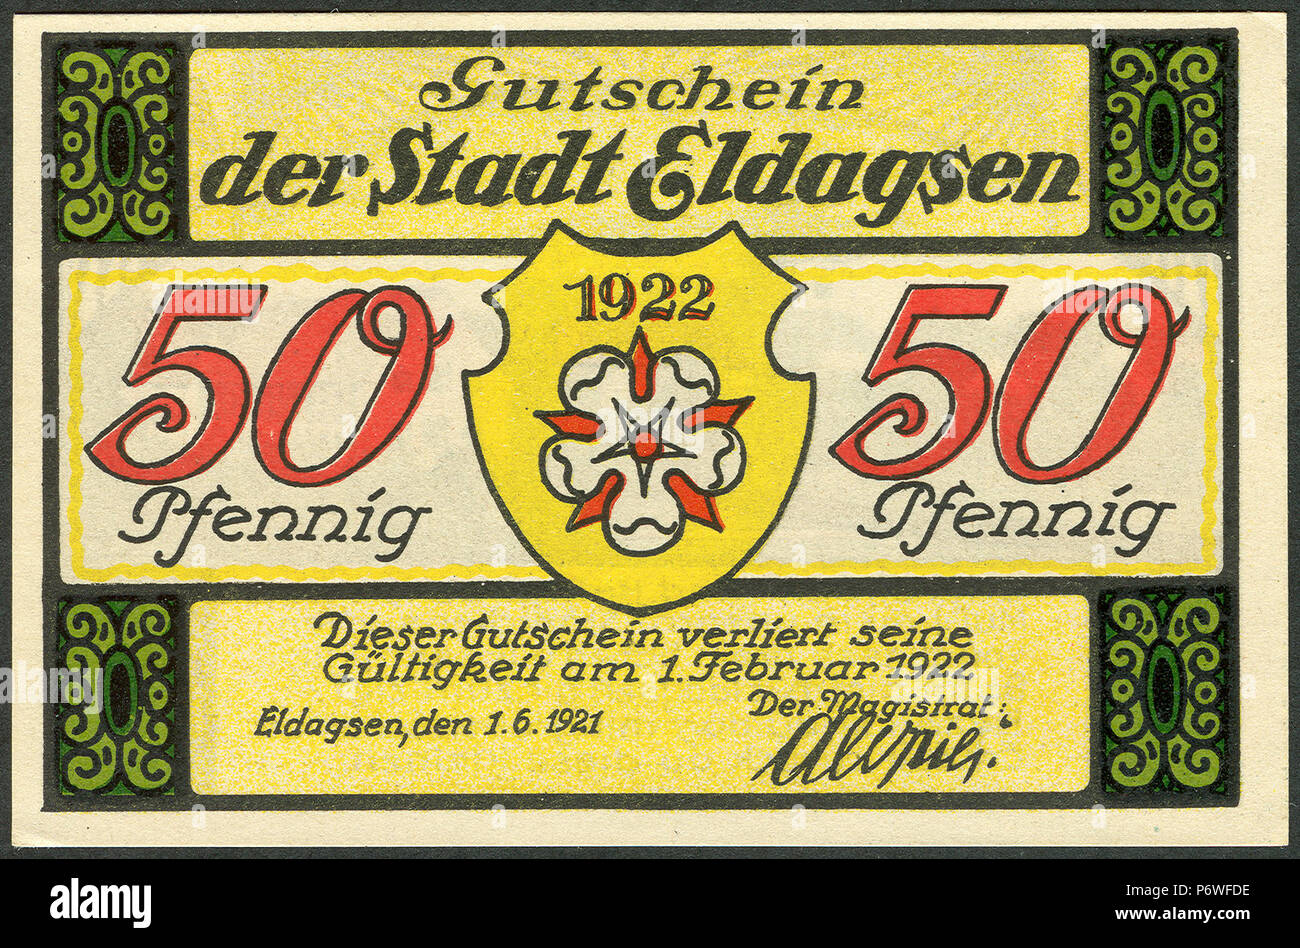 1921-06-01 Gutschein der Stadt Eldagsen, 0,50 Mark 50 Pfennig, gültig bis 1. Februar 1922, a, faksimilierte Unterschrift der Magistrat. Stock Photo